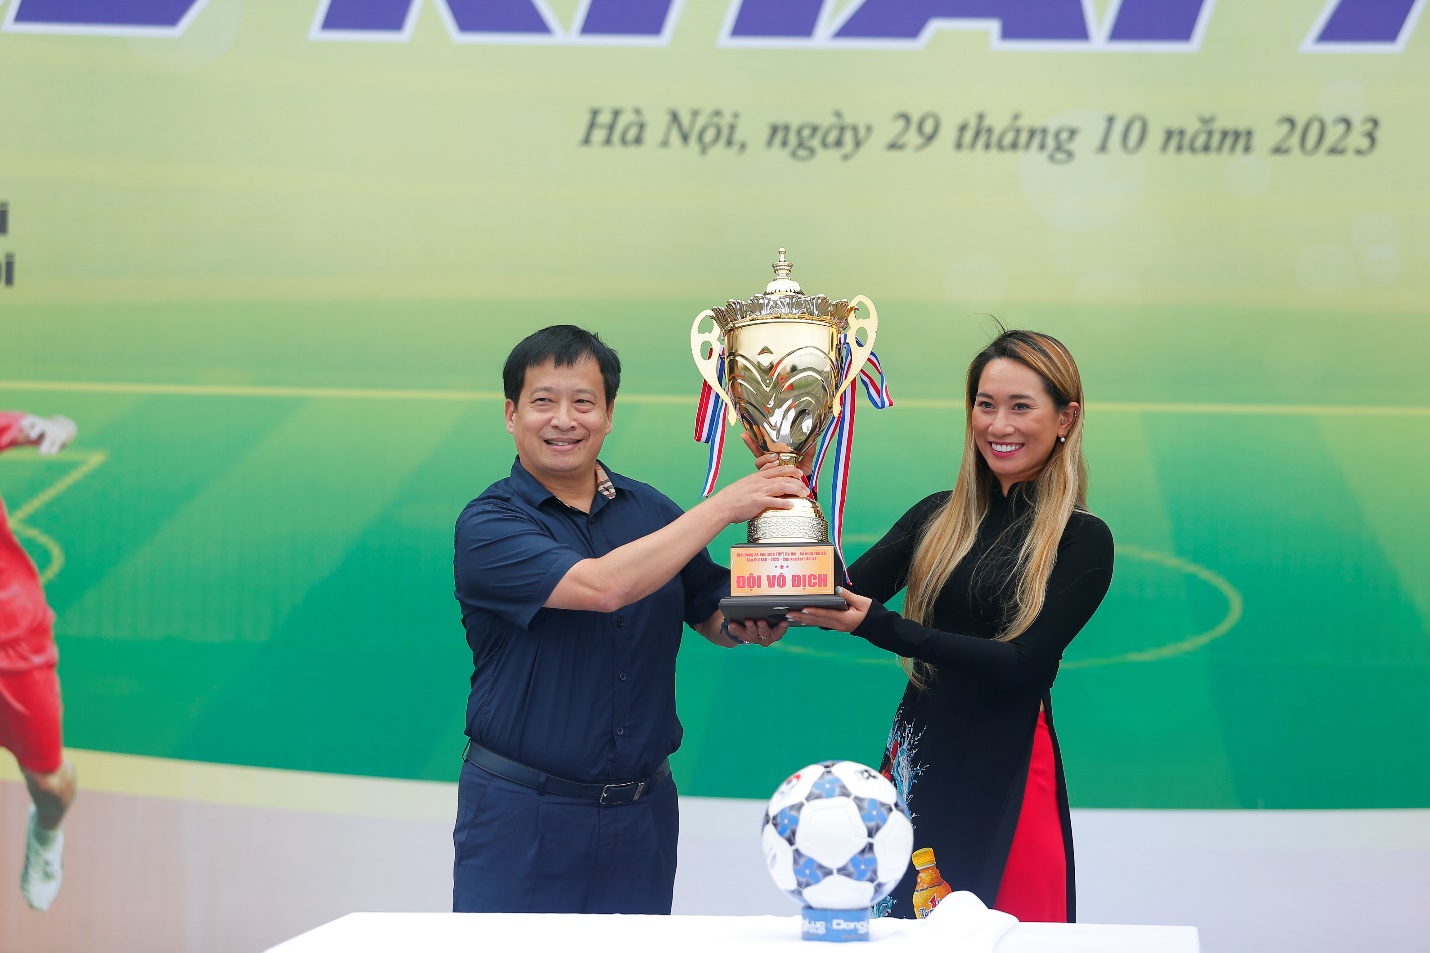 Sôi động ngày khai mạc giải bóng đá học sinh THPT Hà Nội - An ninh Thủ đô lần thứ XXII năm 2023 cup Number 1 Active   - Ảnh 1.